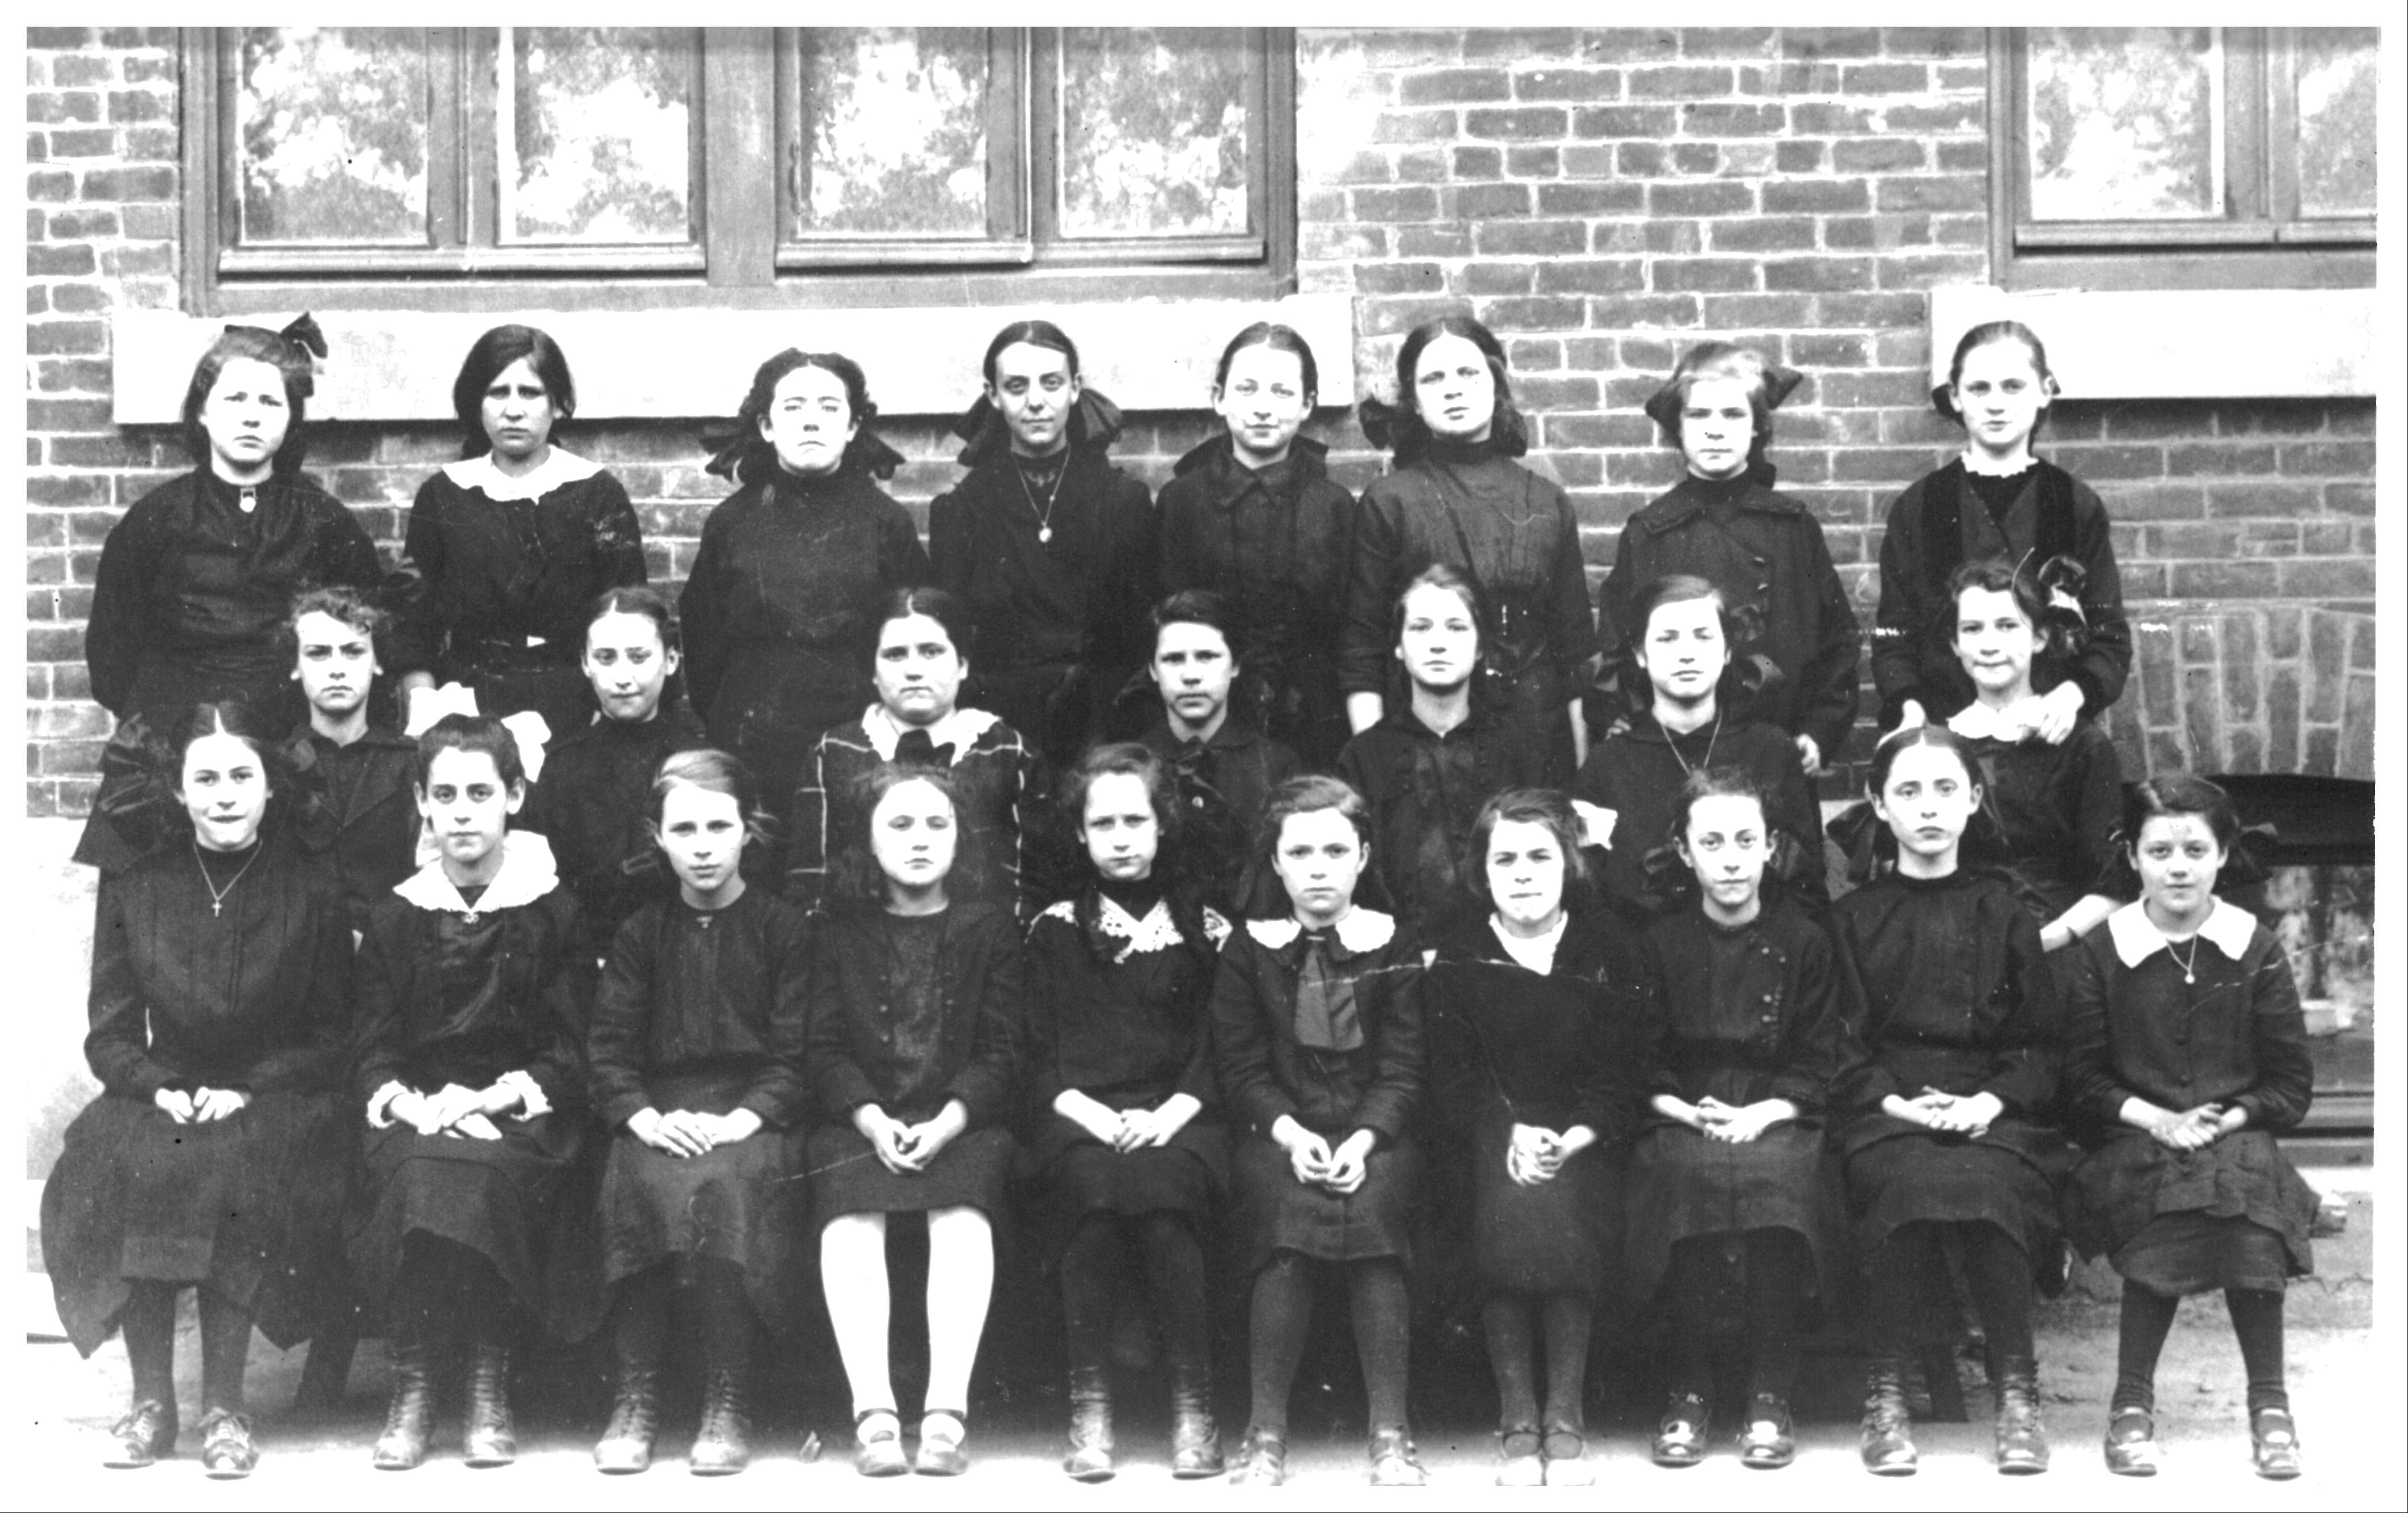 Twenty-five schoolgirls